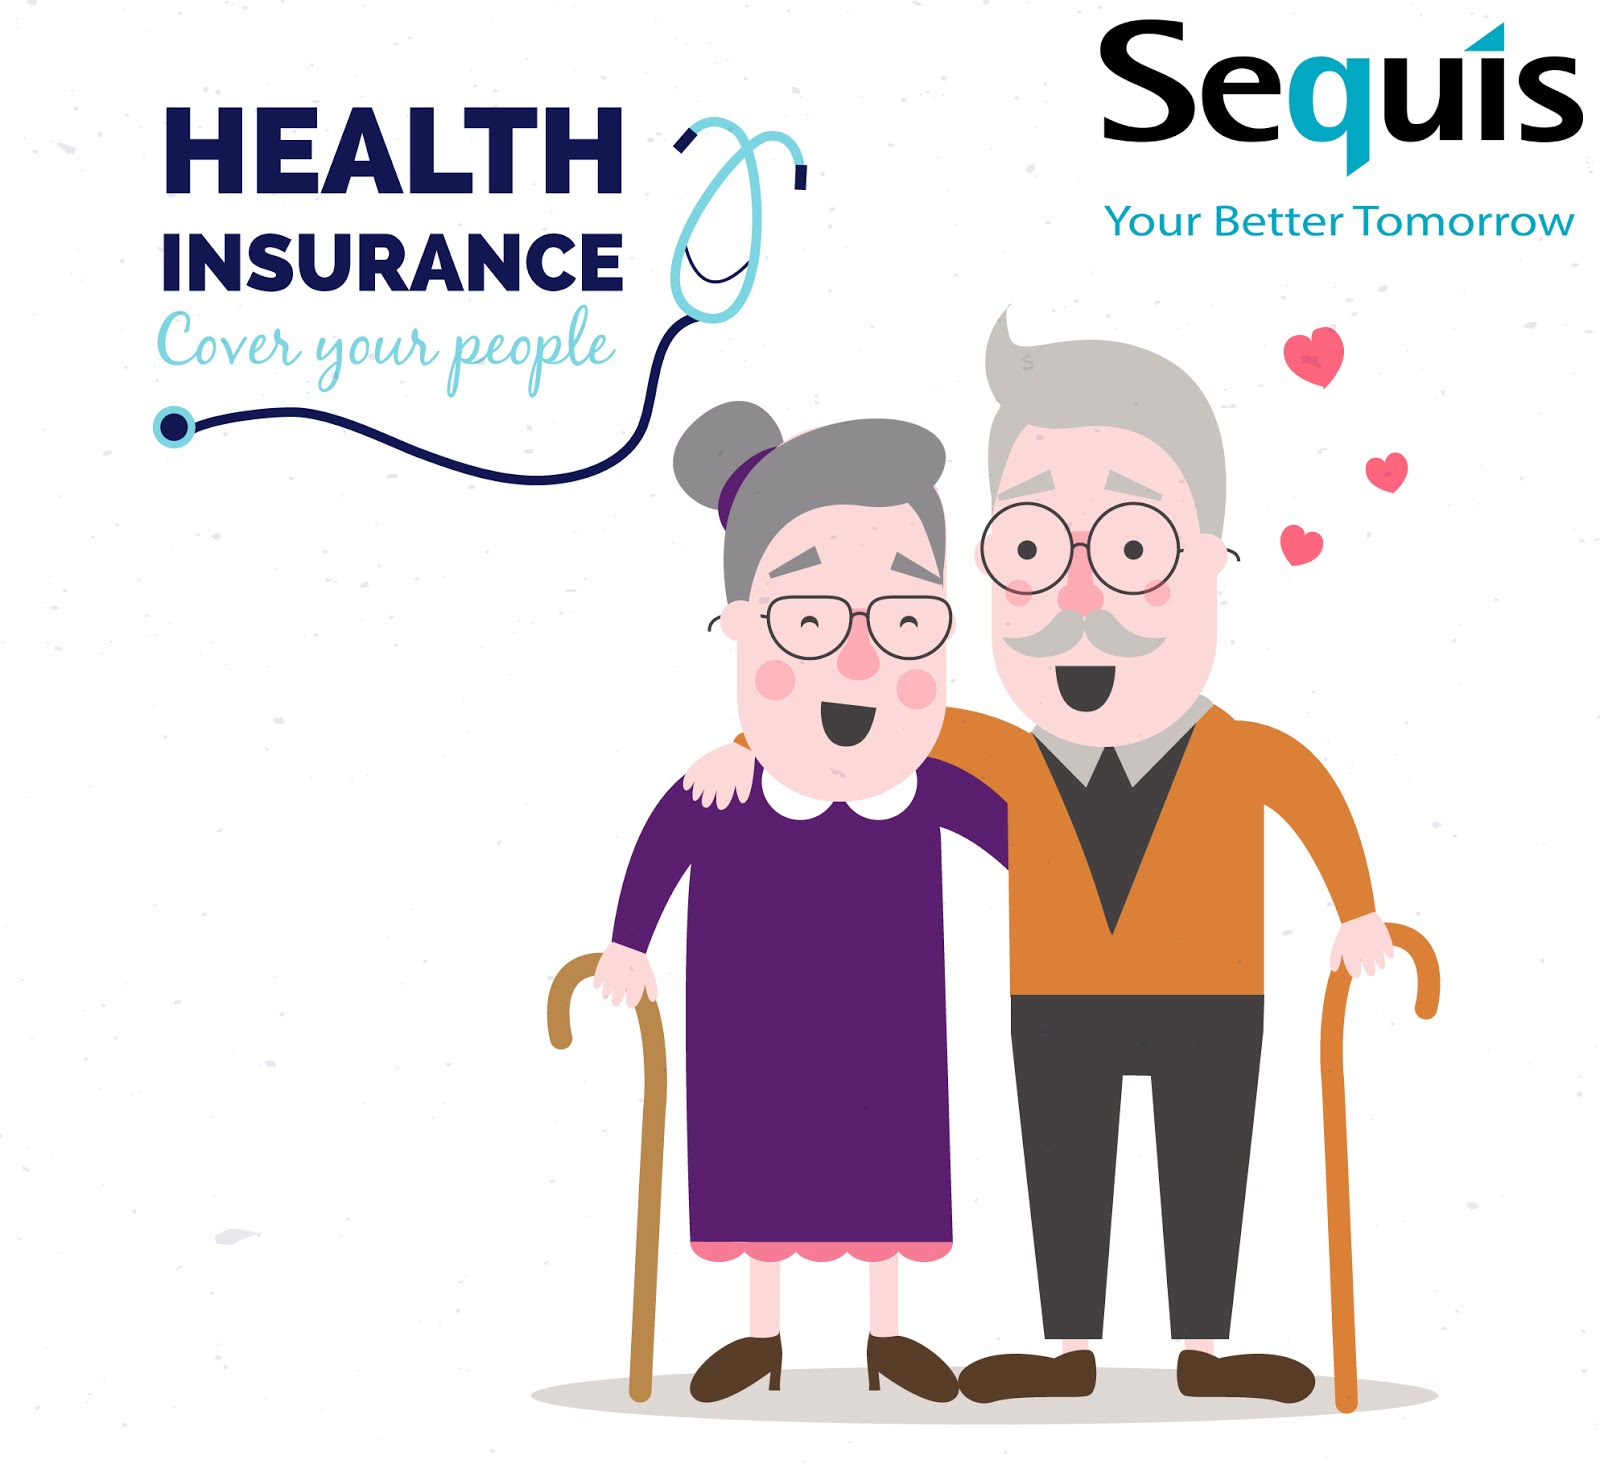 Asuransi Sequislife: Asuransi Kesehatan dan Pensiun Terbaik dari Sequis